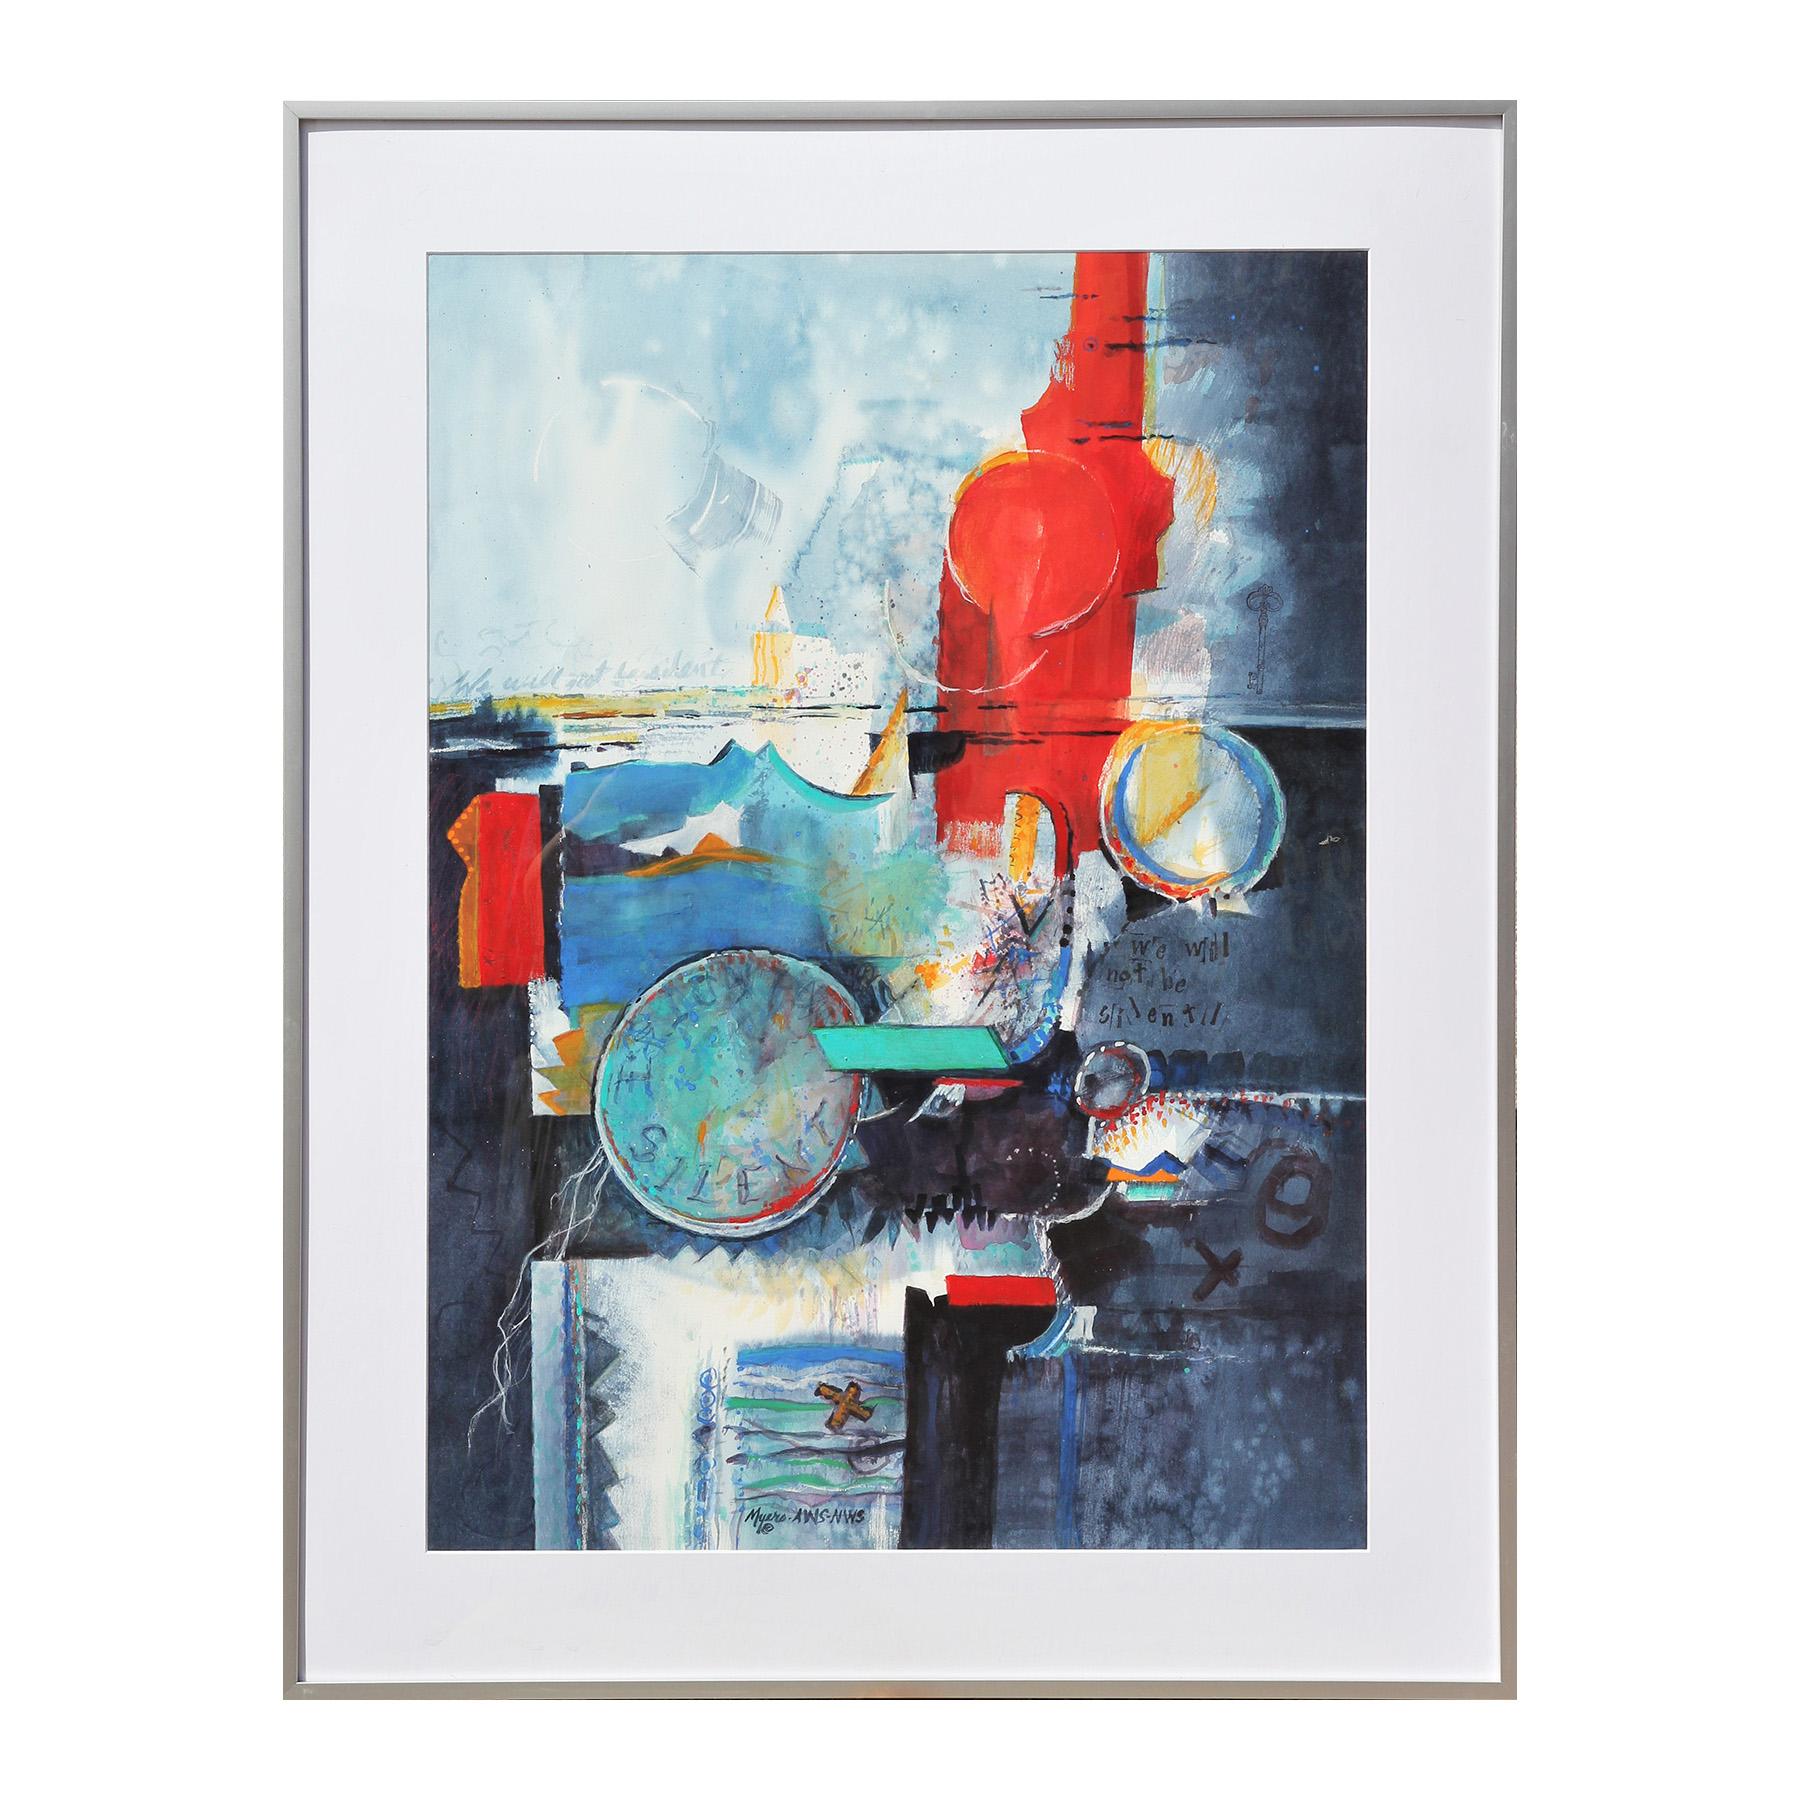 Blaues, rotes und gelbes modernes abstraktes Mixed-Media-Gemälde der texanischen Künstlerin Carole Myers. Das Werk zeichnet sich durch ausdrucksstarke Farbstriche aus, in denen der Satz 